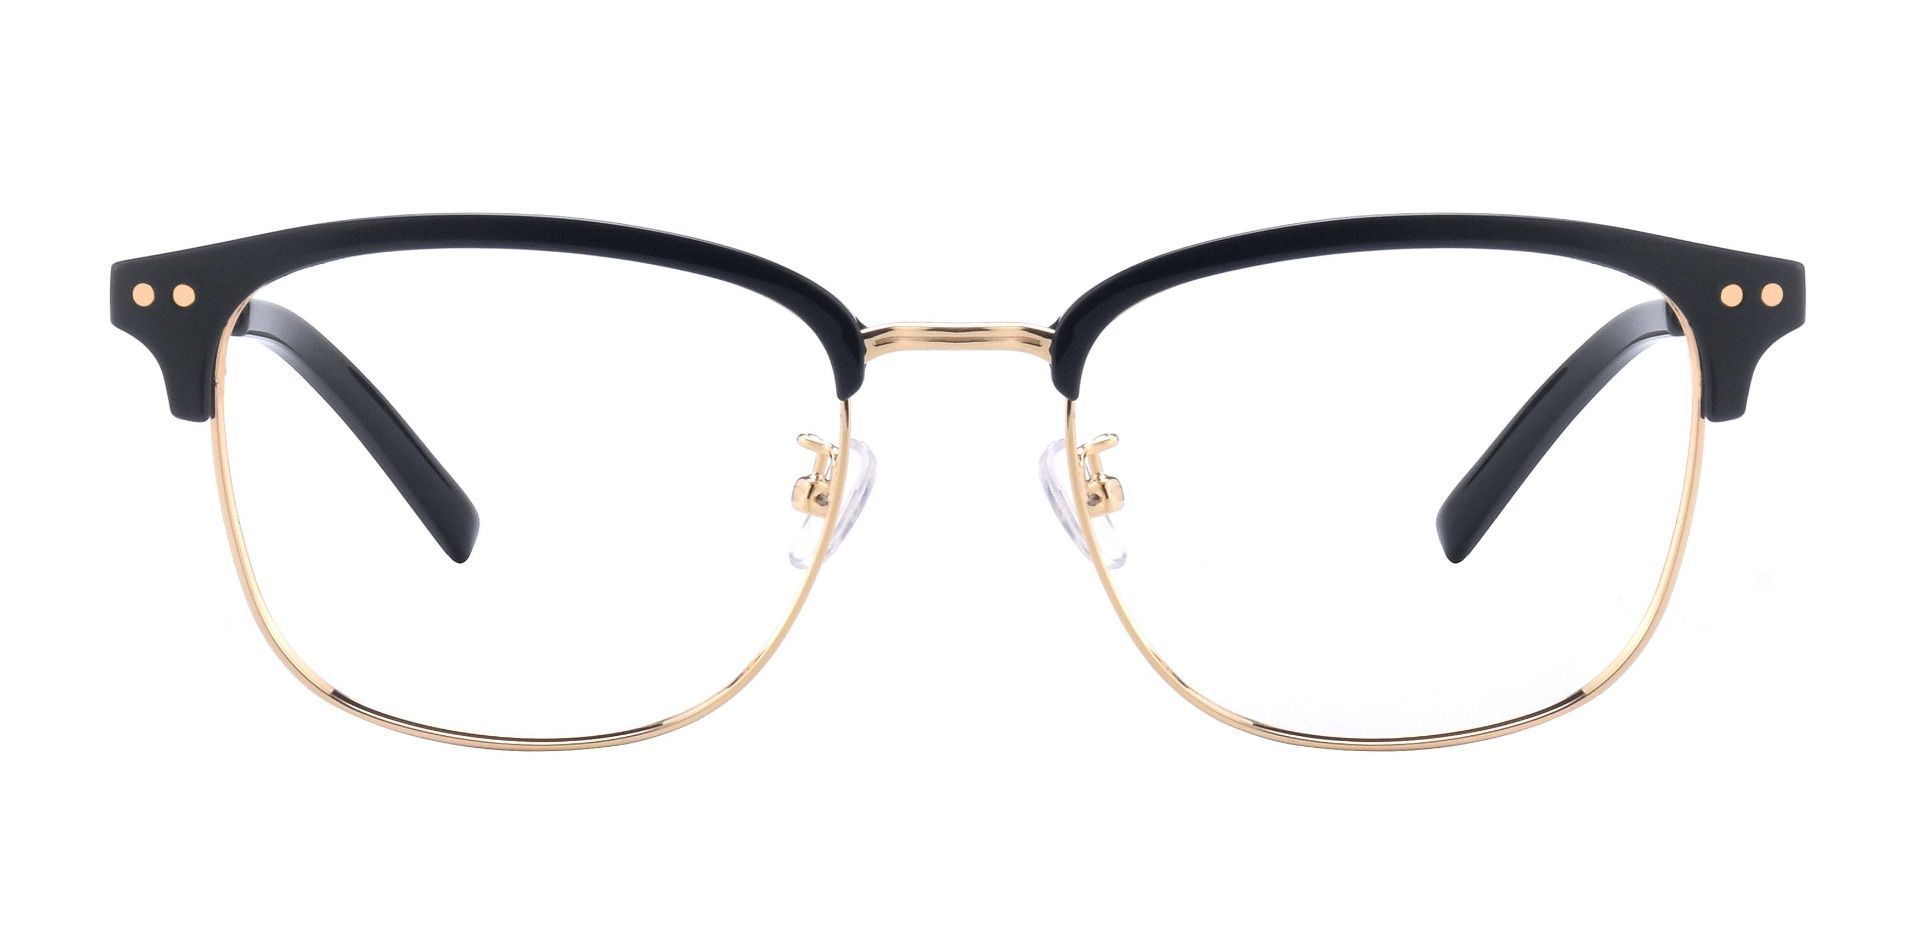 Cutler Browline Prescription Glasses Black Women S Eyeglasses Payne Glasses